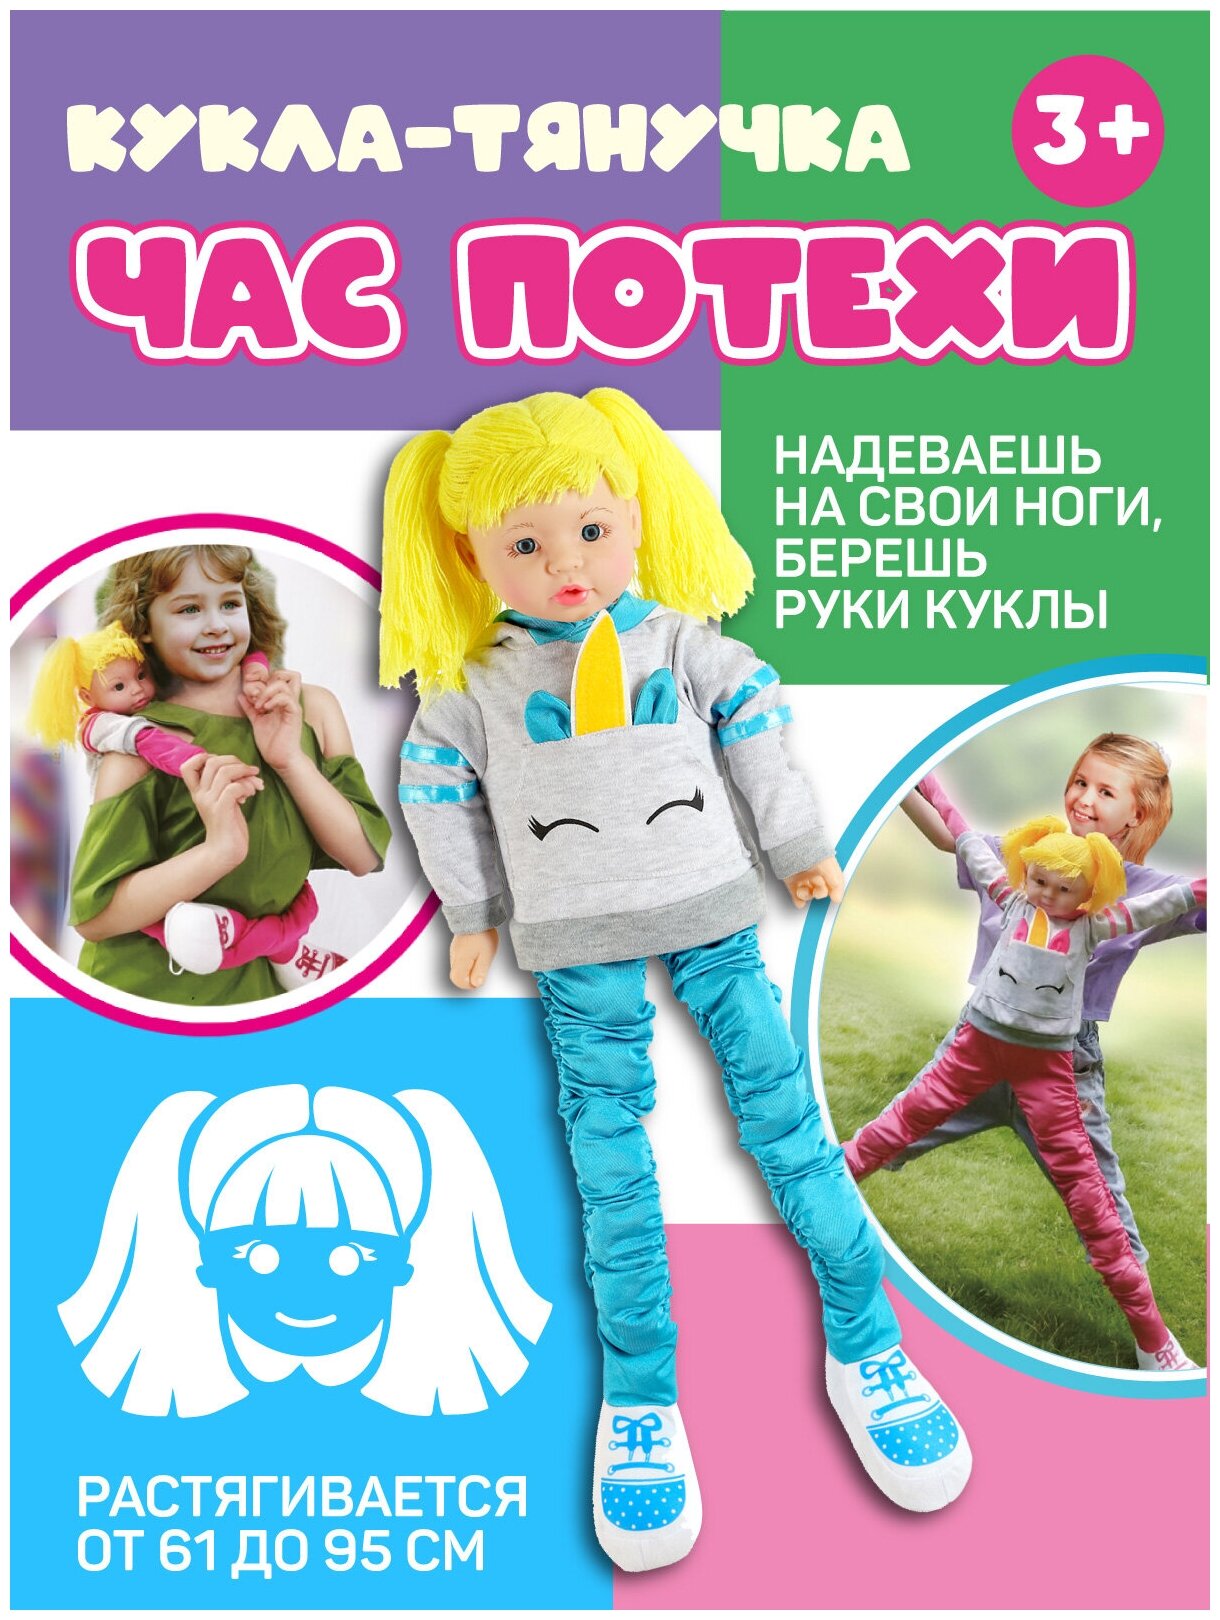 Кукла- Тянучка серия "Час потехи" , 61 см растягивается до 95 см, ростовая кукла, JB0208393